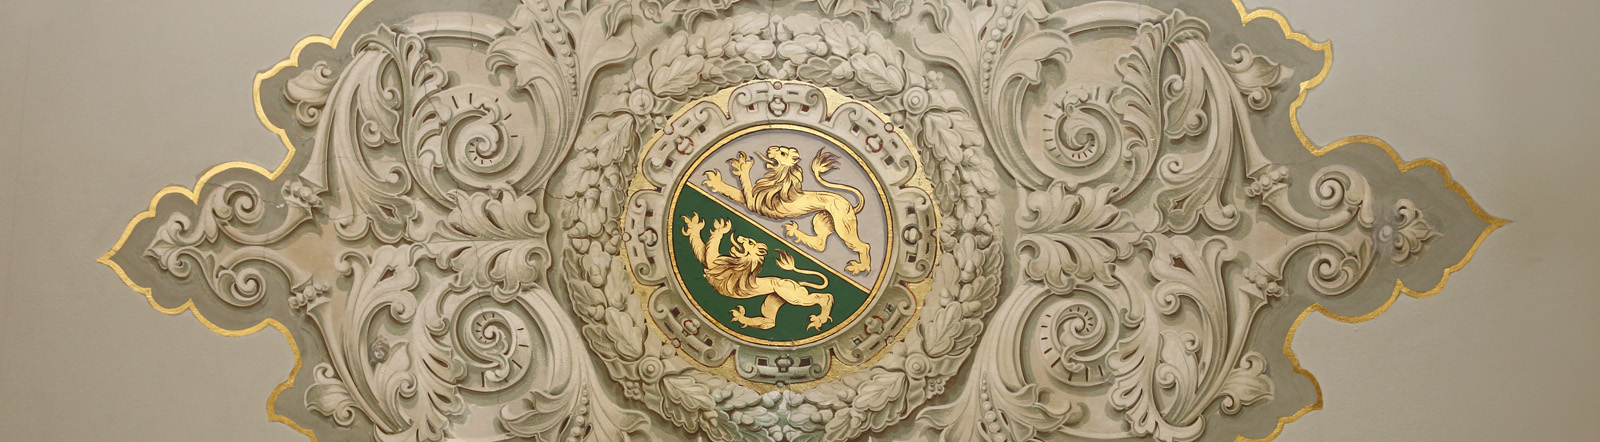 Wappen Thurgau